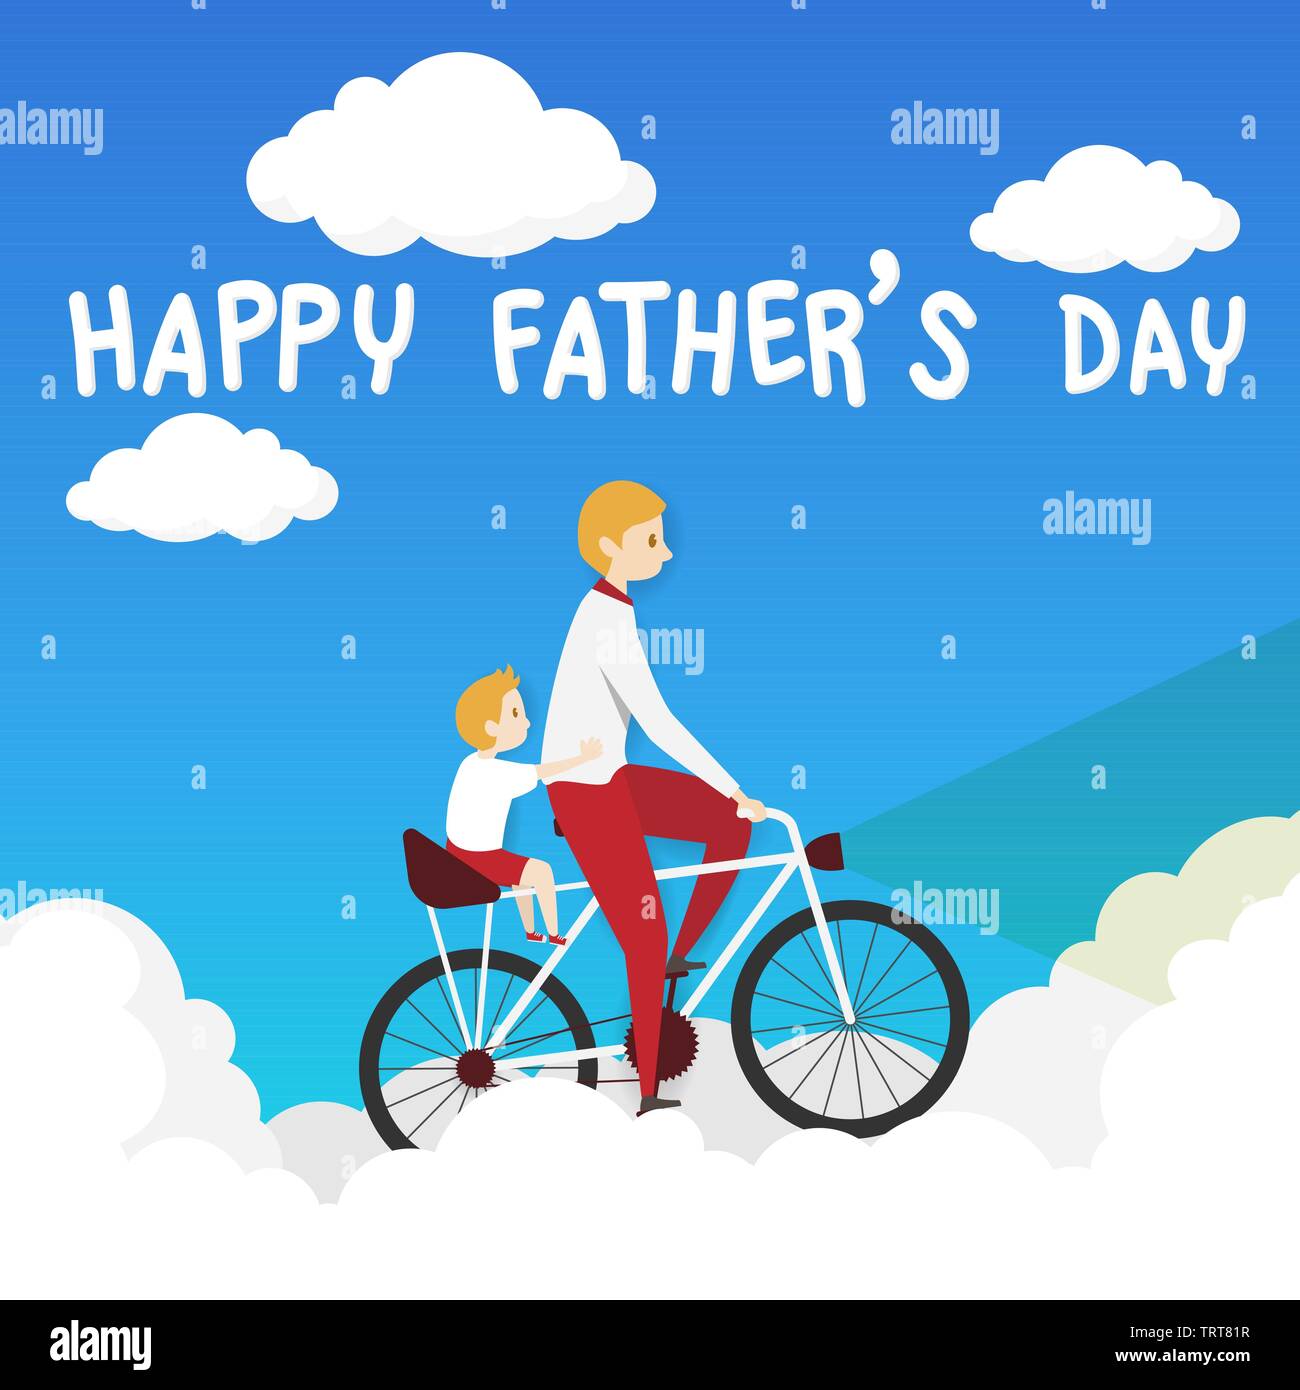 Der Vektor der happy Vatertag Grußkarte. Vater radfahren Fahrrad mit seinem Sohn fahren mit Sozius, Reiten über die weiße Wolke auf blauem Hintergrund. Stock Vektor